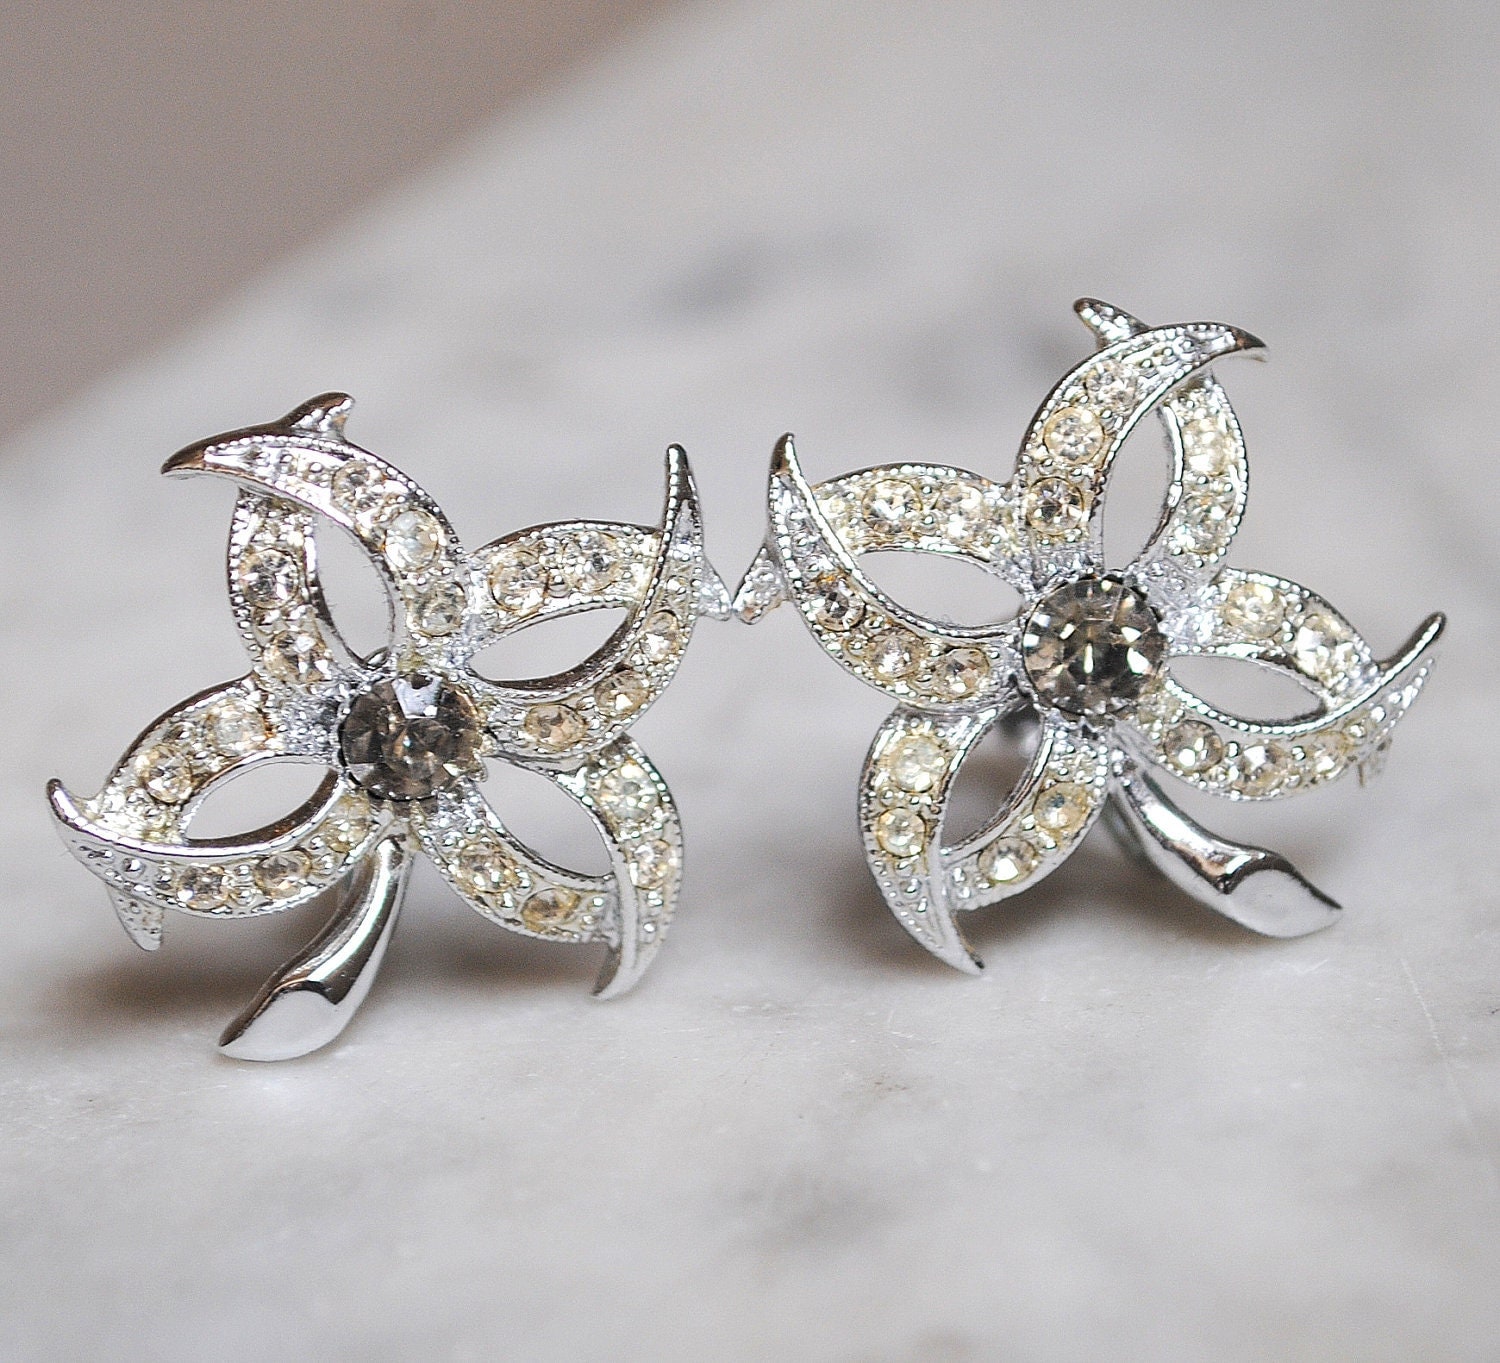 silver star earrings | Silver star earrings, Jewelry, Star earrings